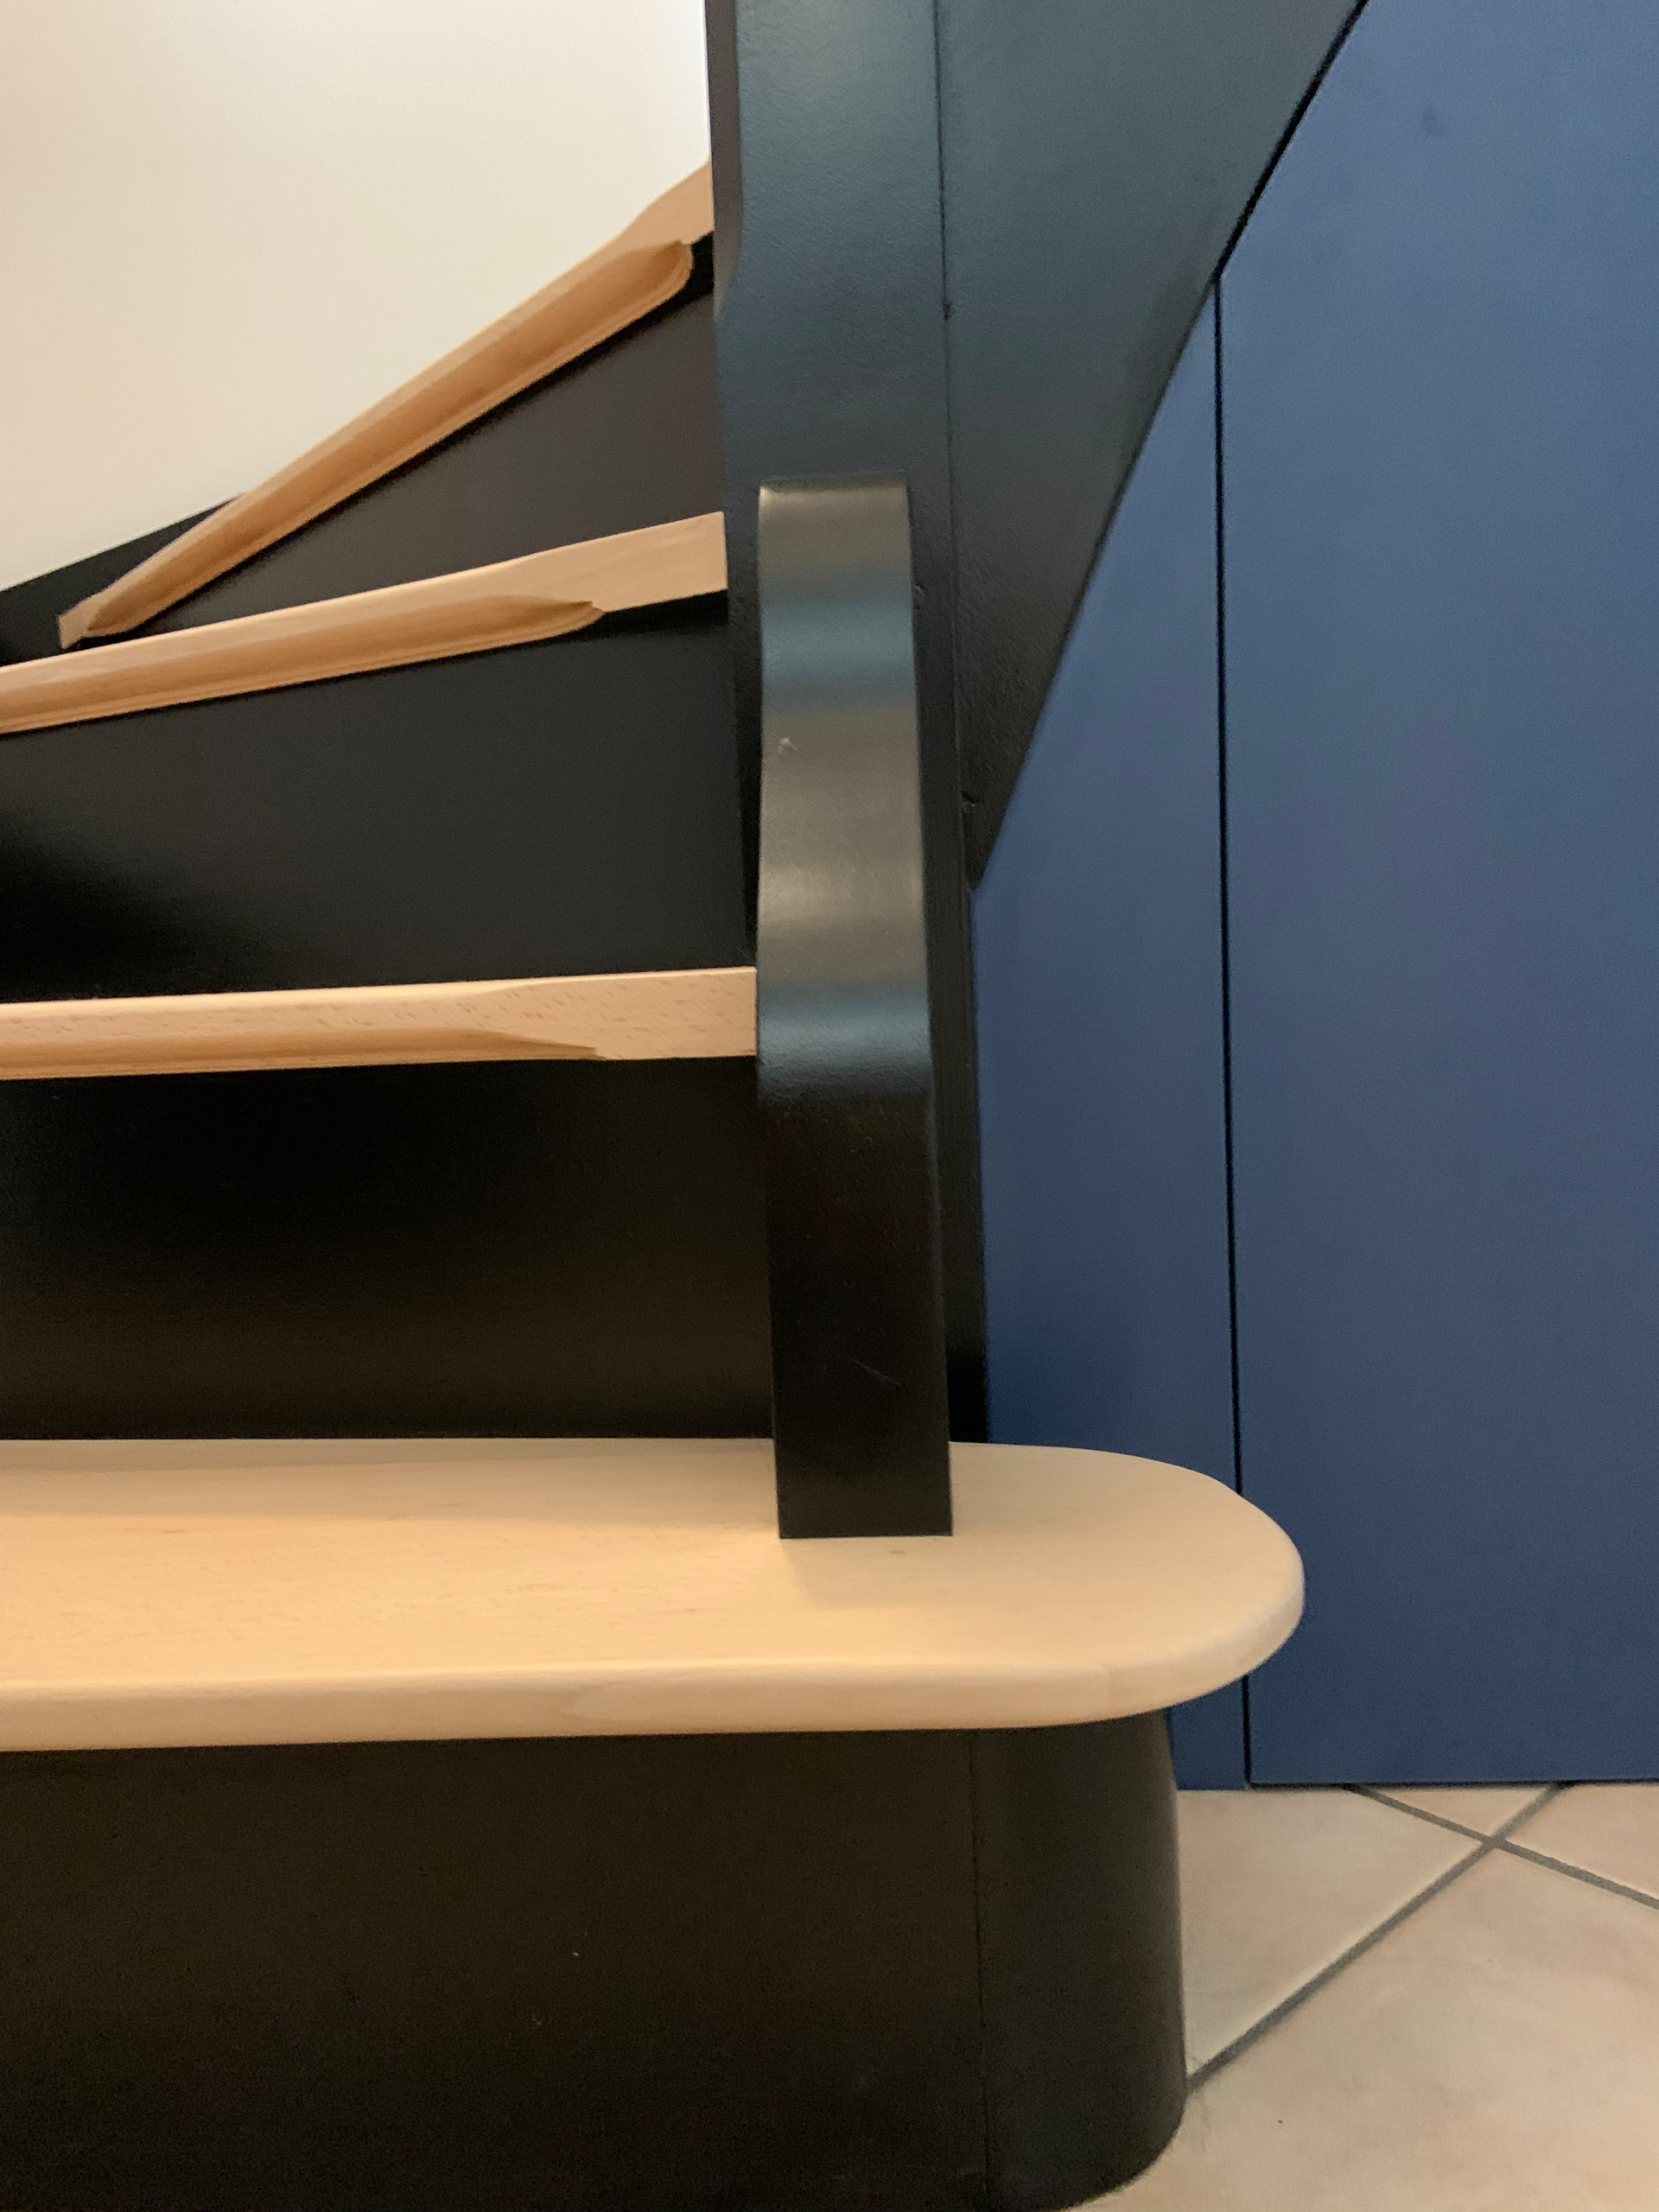 Intégration d'un mobilier sur mesure sous l'escalier pour créer des rangements et exploiter l'espace.